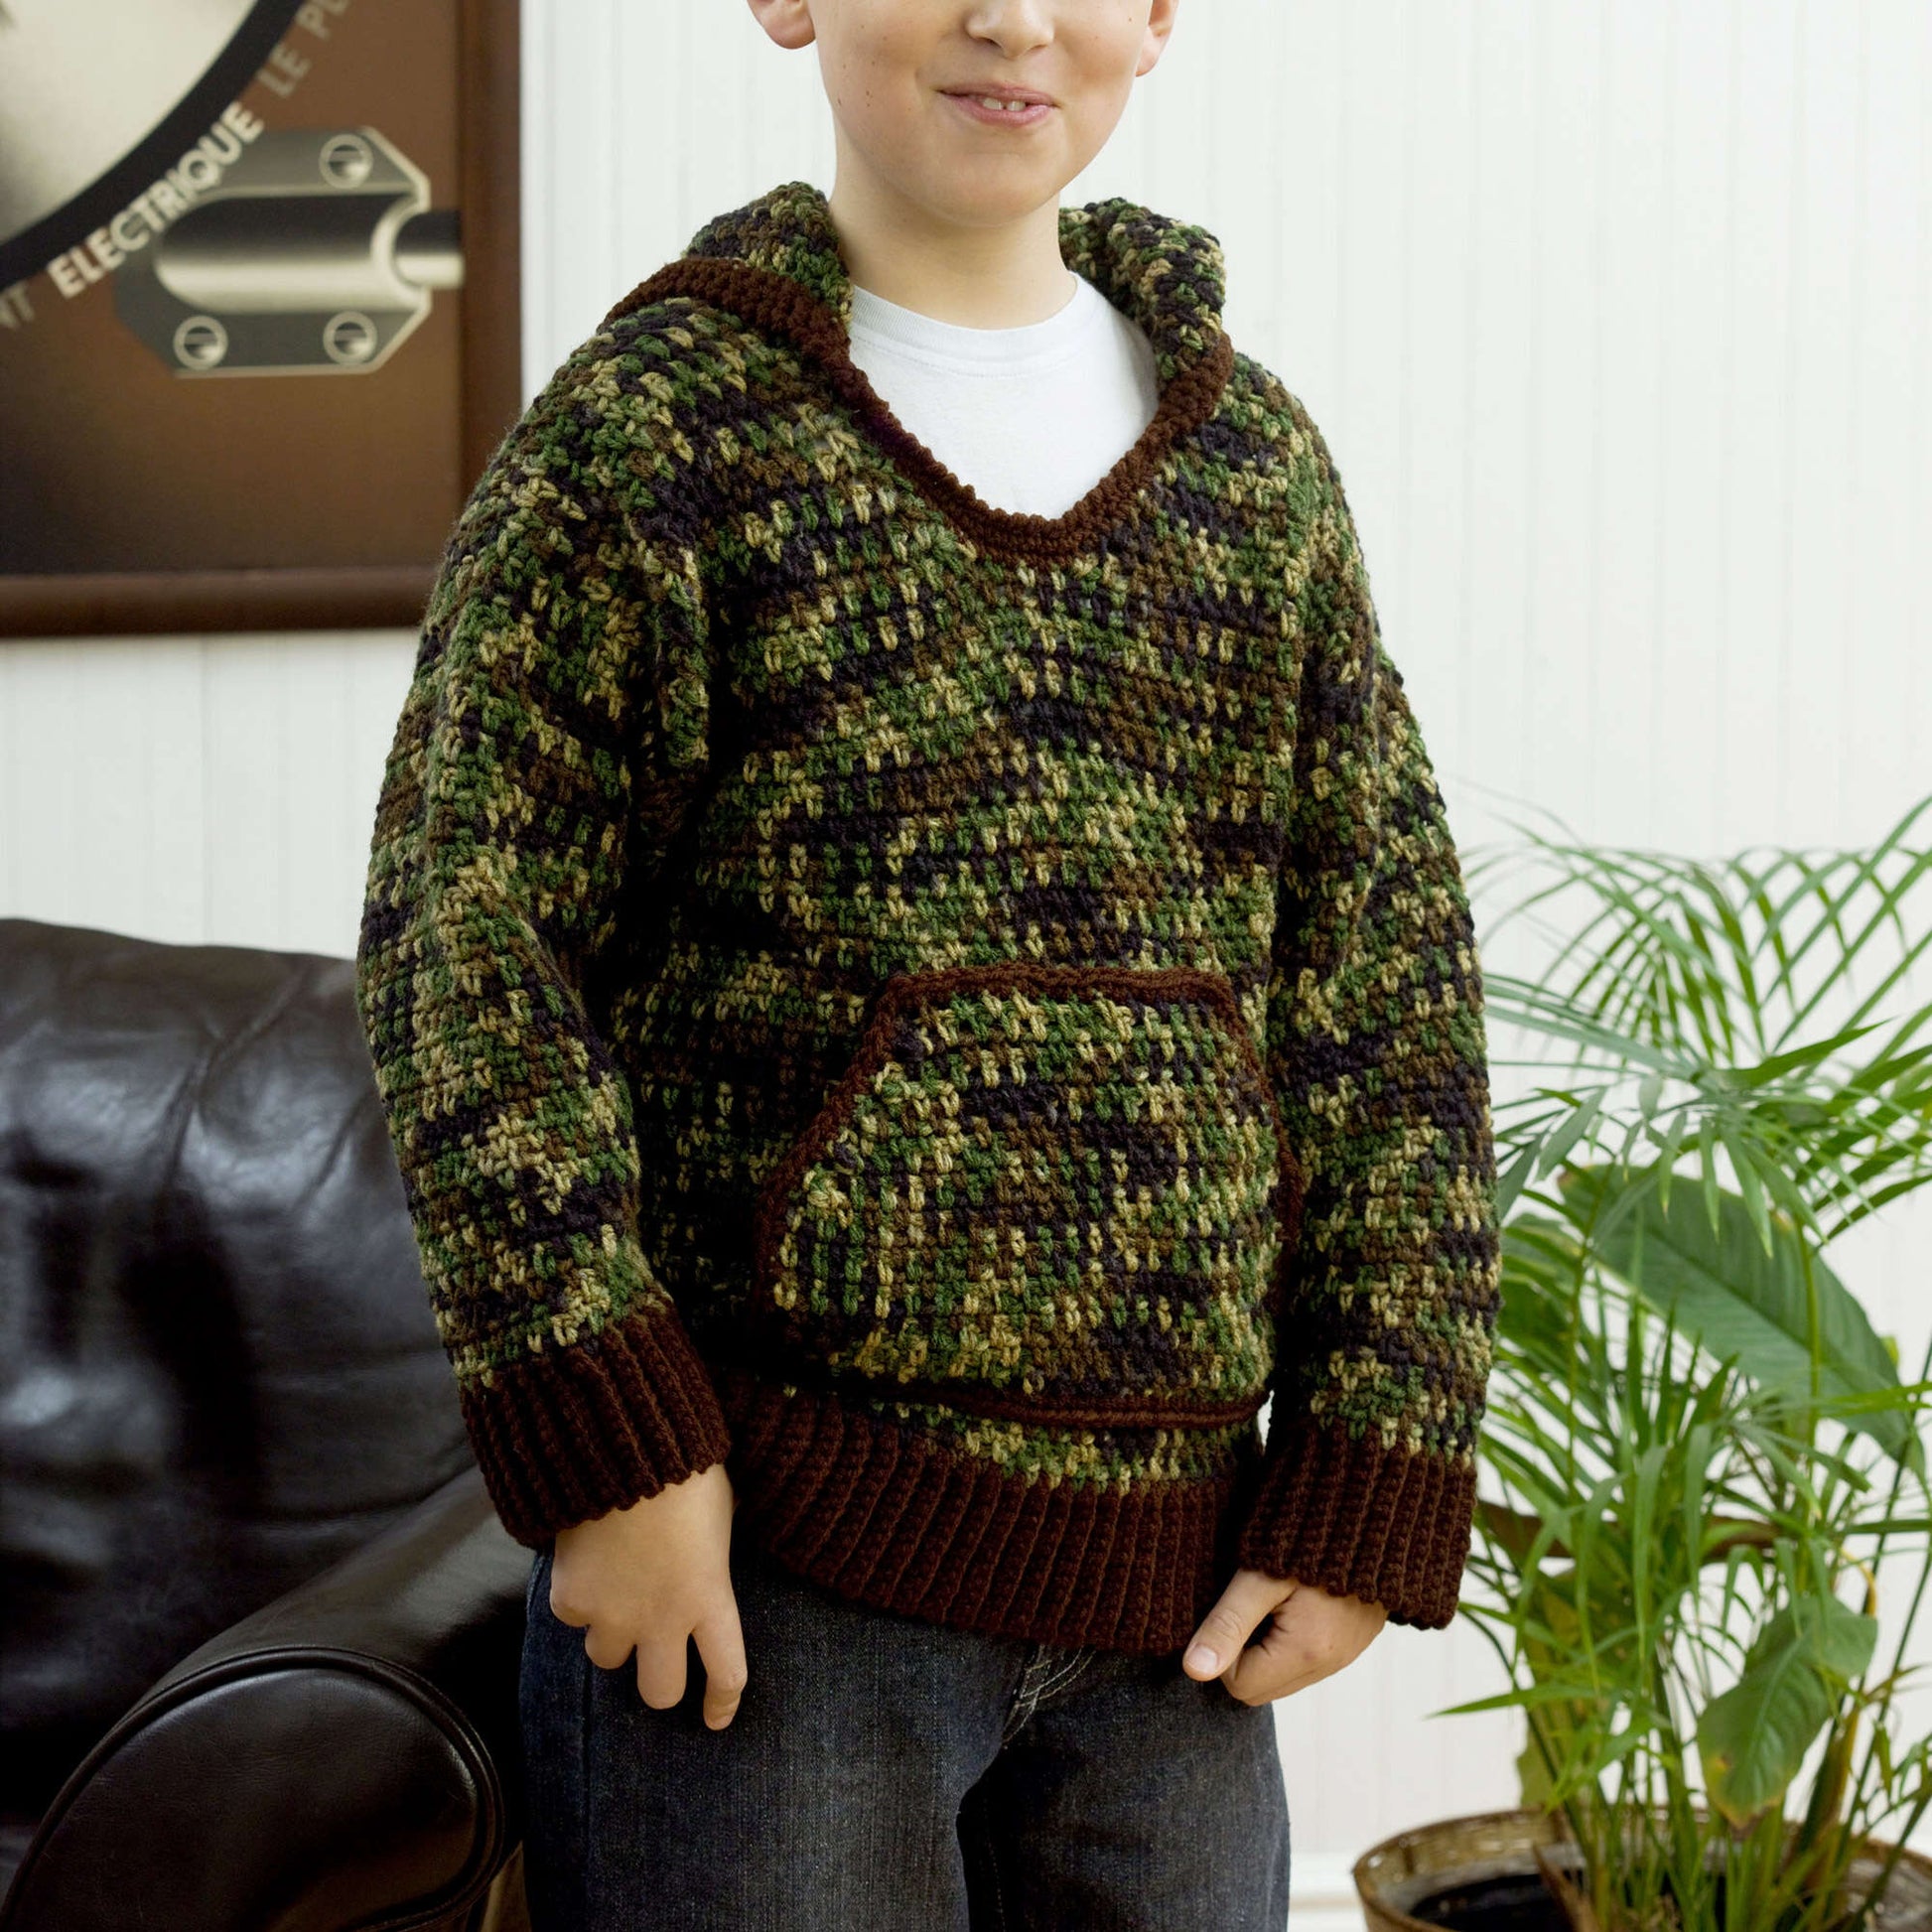 Free Red Heart Kid's Hooded Sweatshirt Crochet Pattern